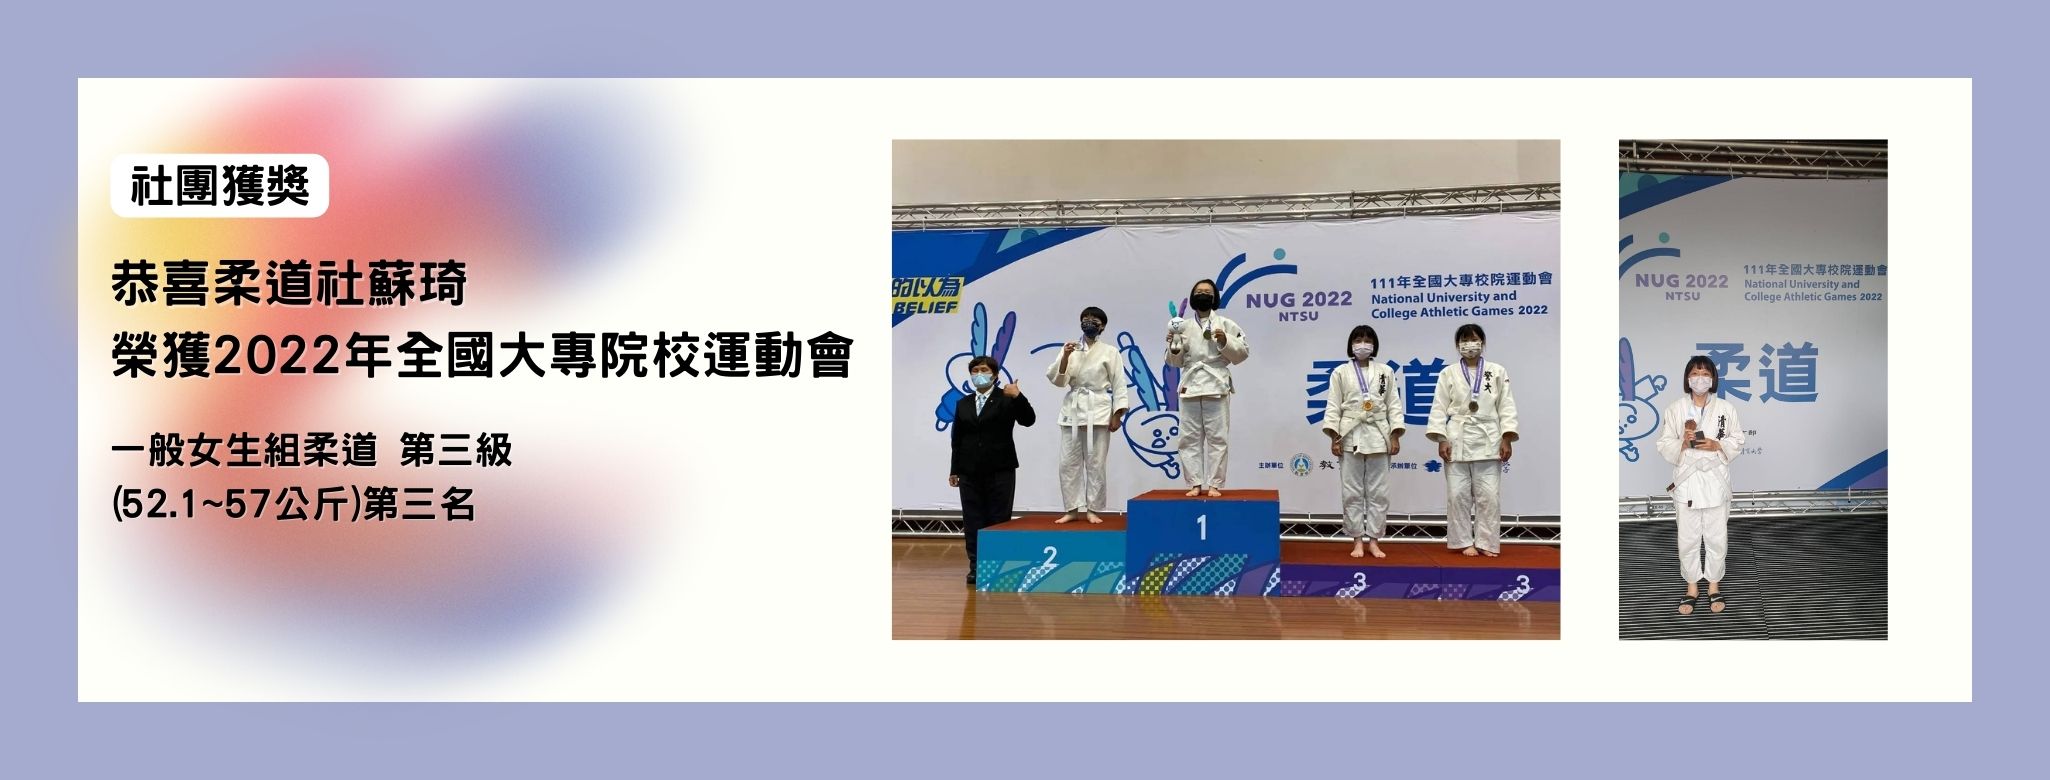 柔道社蘇琦榮獲2022年全國大專院校運動會一般女生組柔道第三級